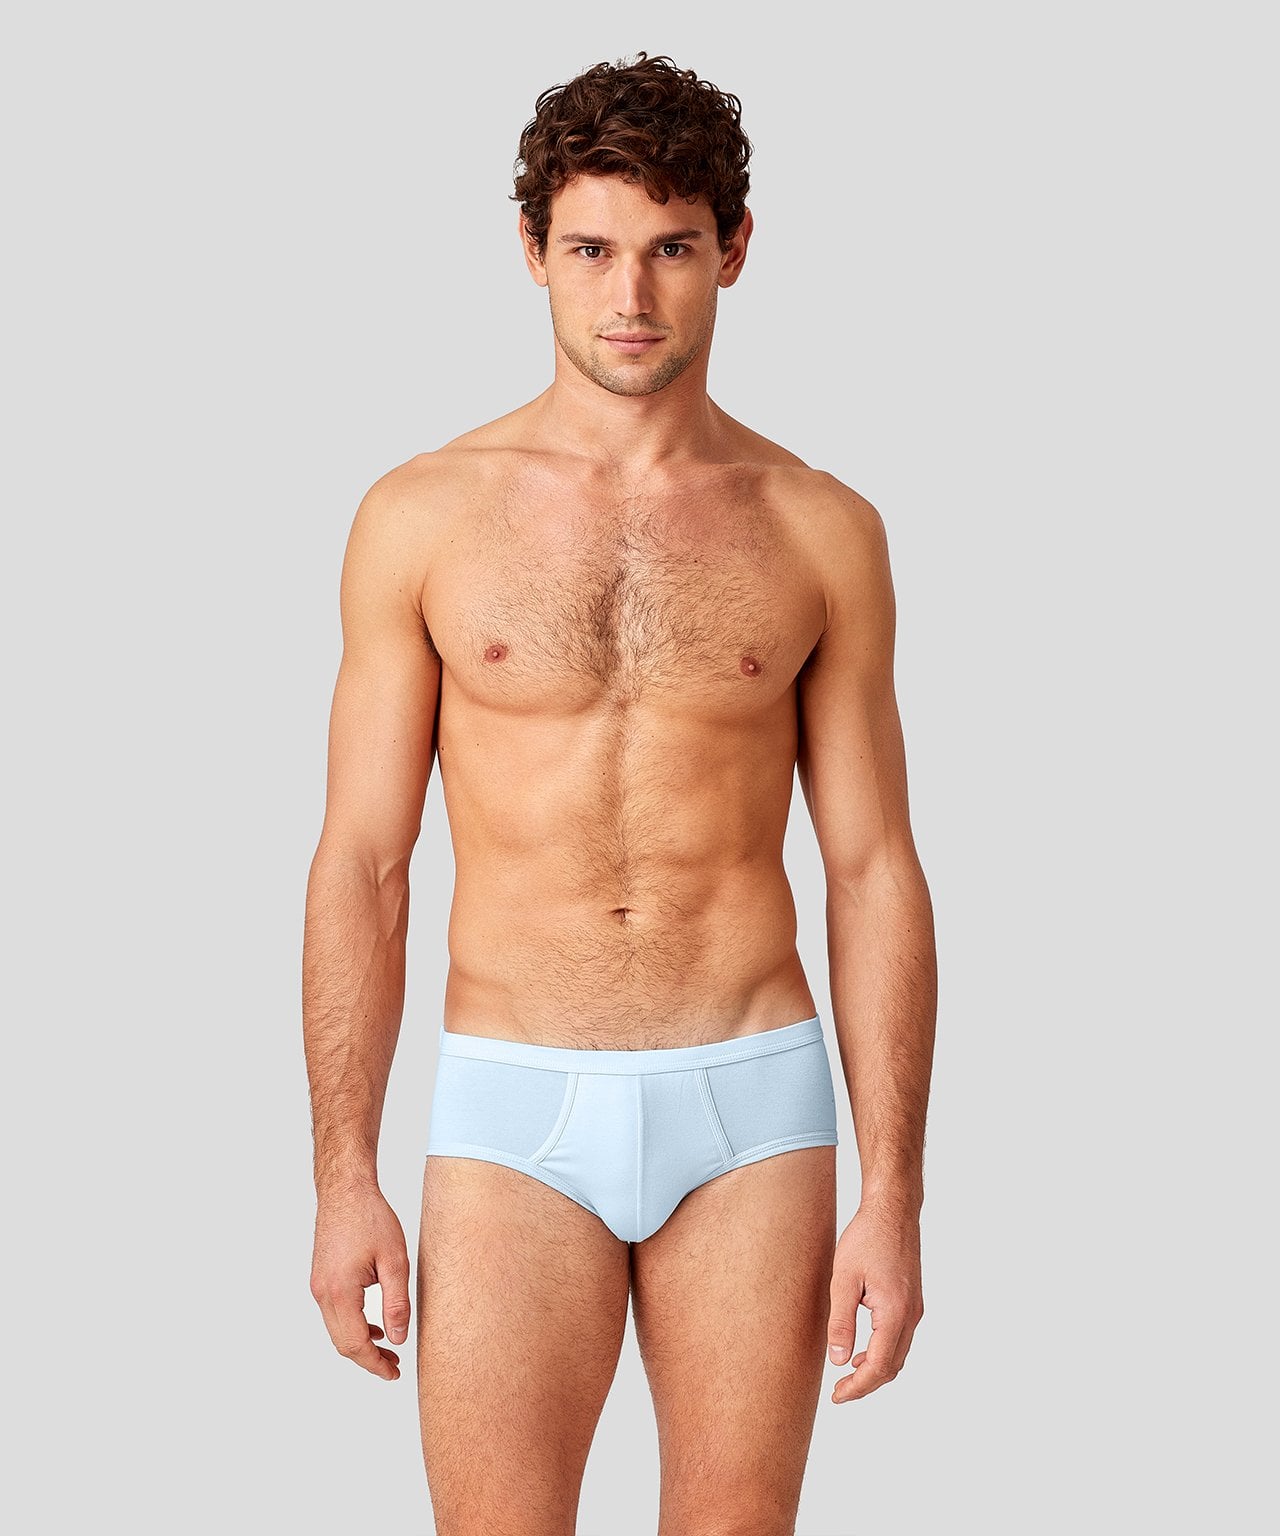 The Best Stylish Underwear to Shop For Men in 2020 | POPSUGAR Fashion